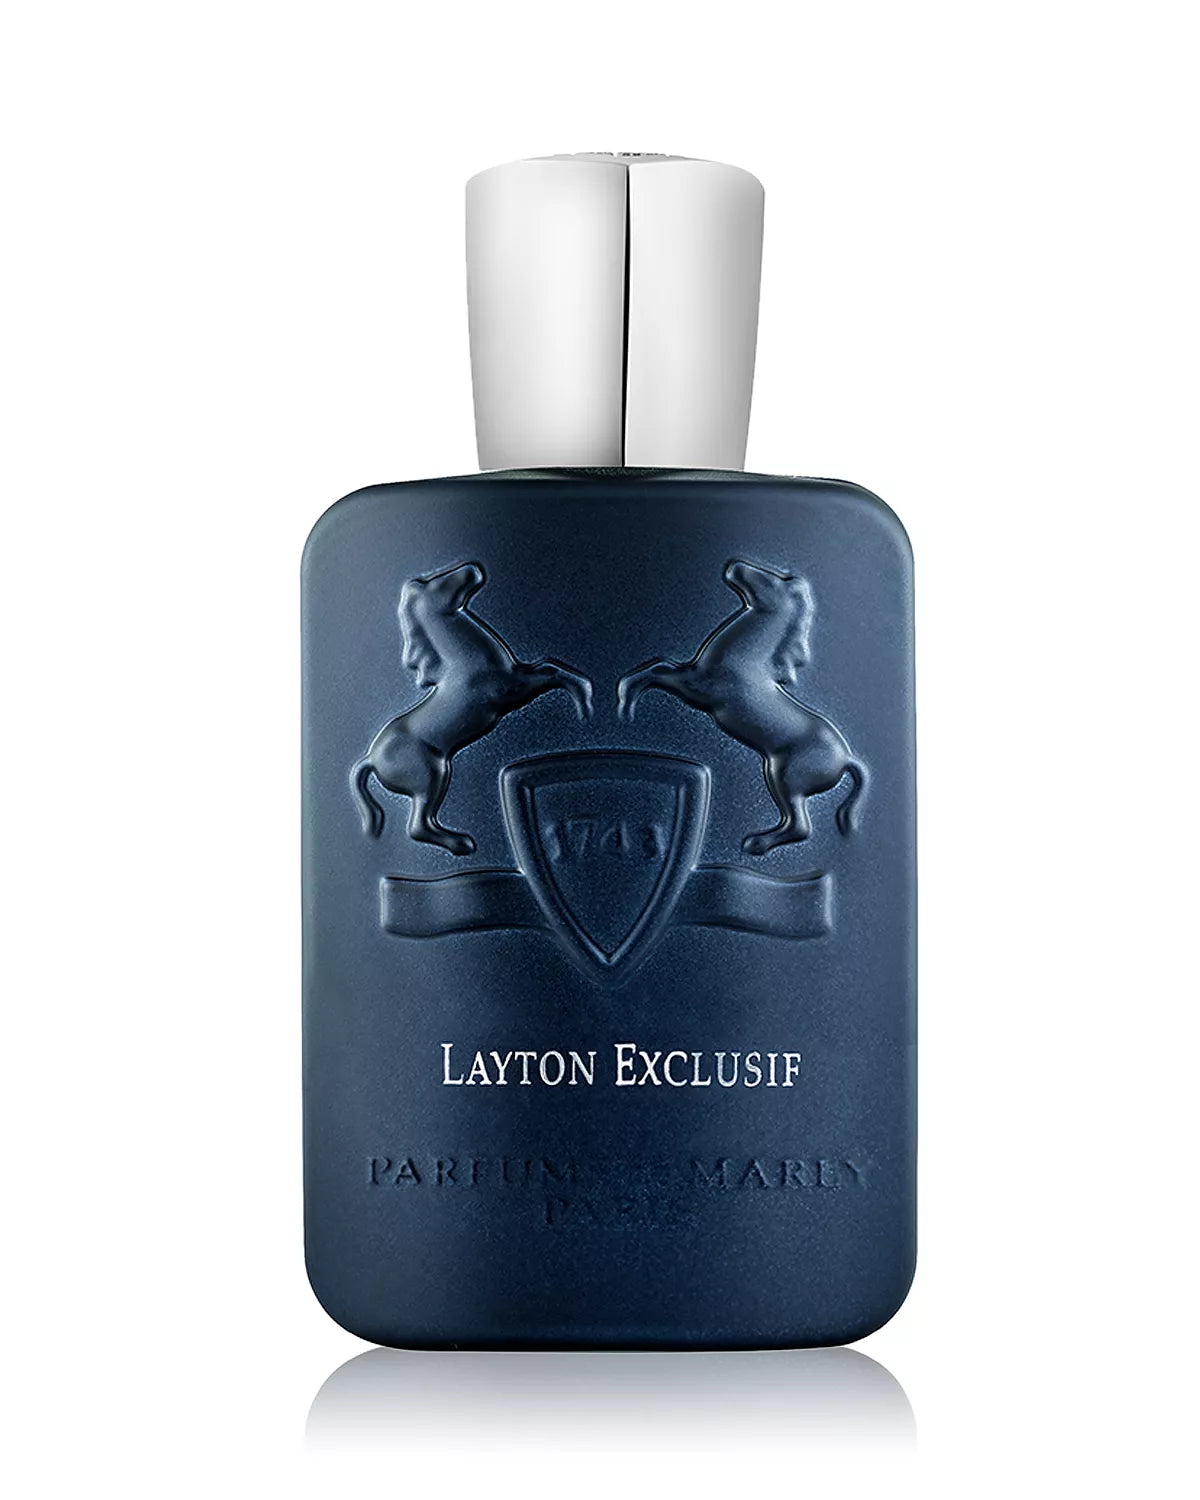 Parfums de Marly Layton Exclusif Edition Royale  Eau de Parfum 4.2 oz 125 ml